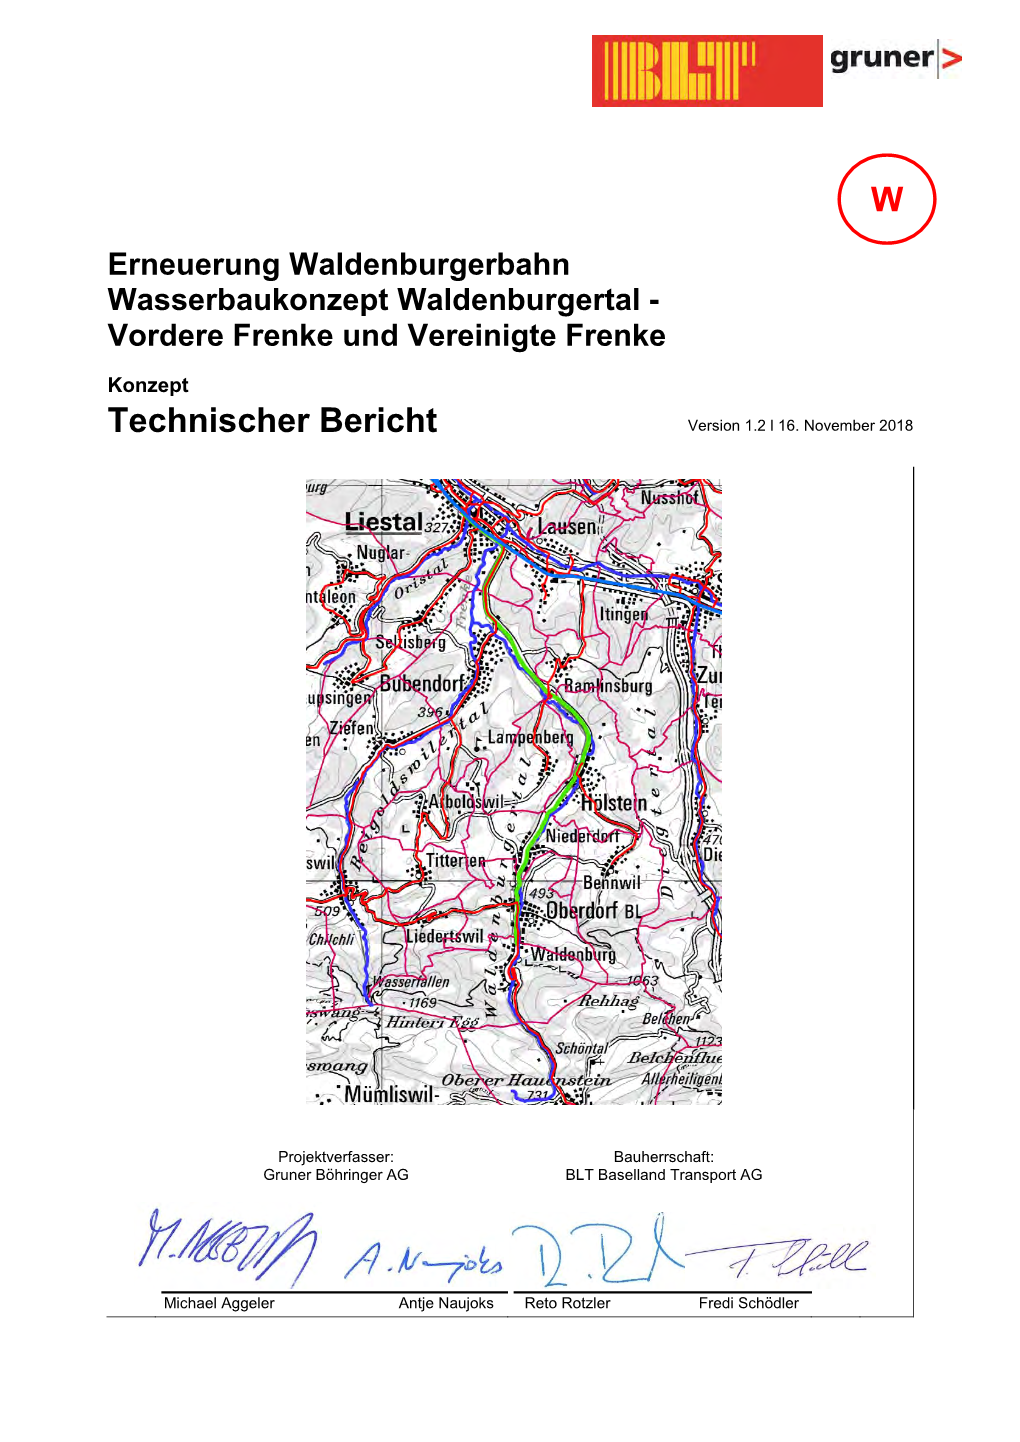 Erneuerung Waldenburgerbahn Wasserbaukonzept Waldenburgertal - Vordere Frenke Und Vereinigte Frenke